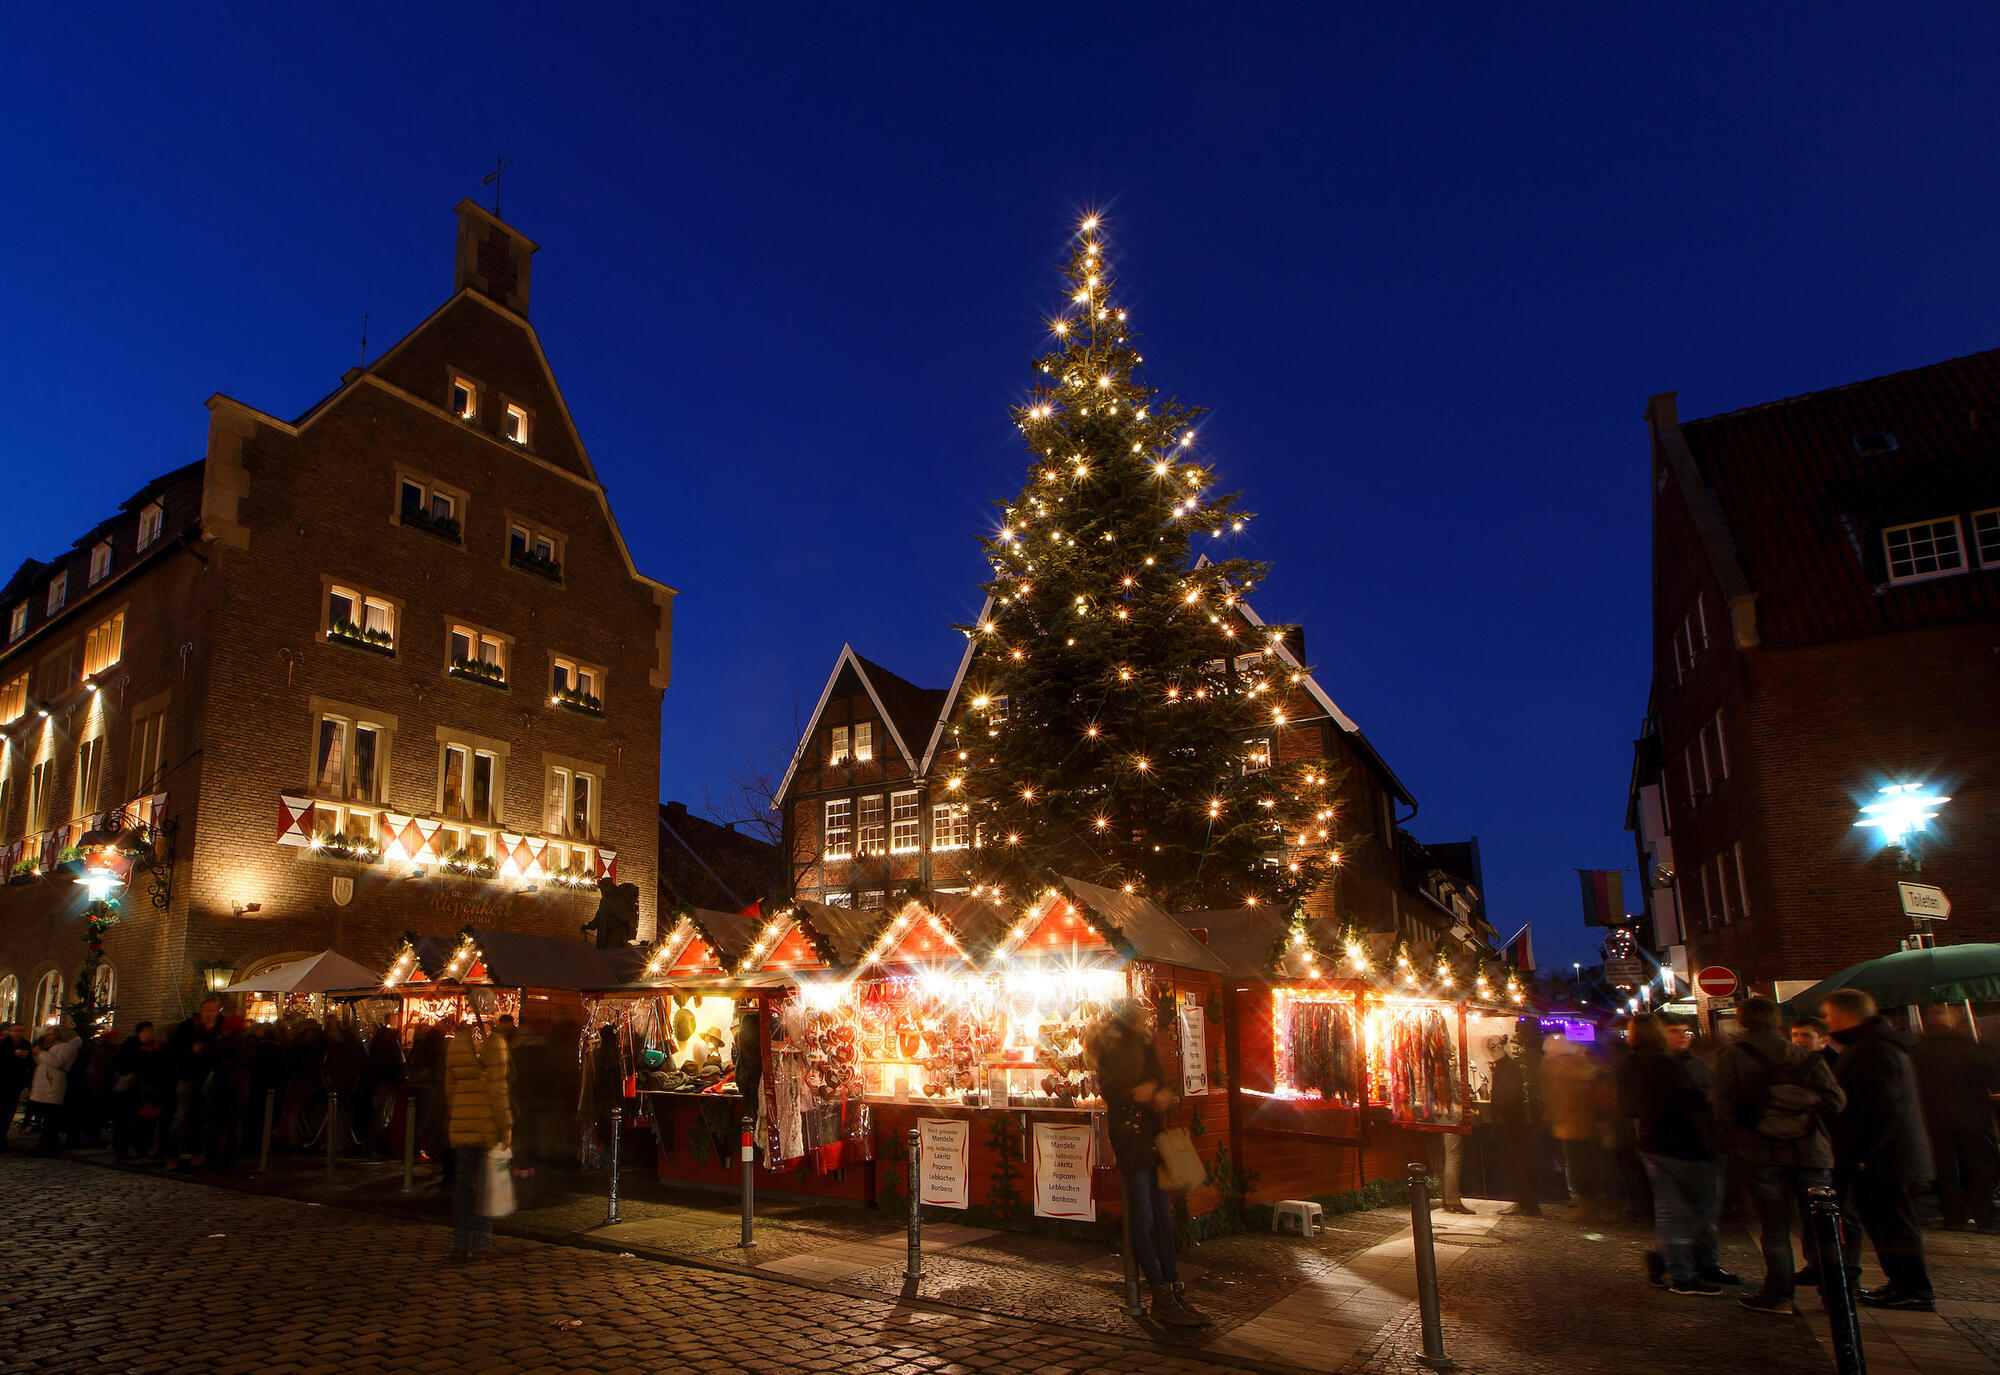 Weihnachtsmarkt am Kiepenkerl Münster